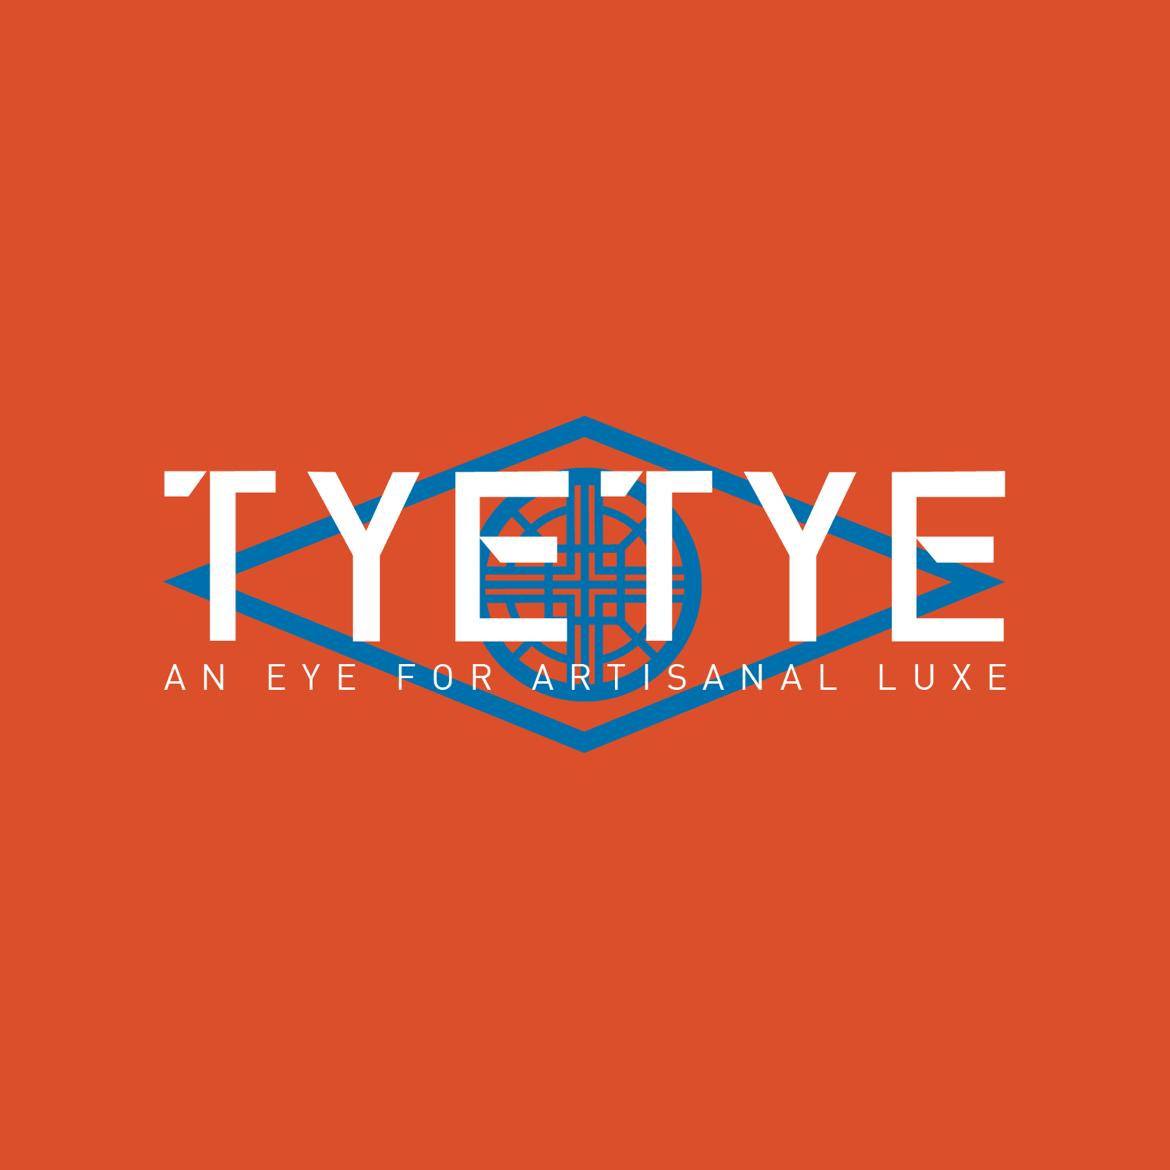 Tyetye's images